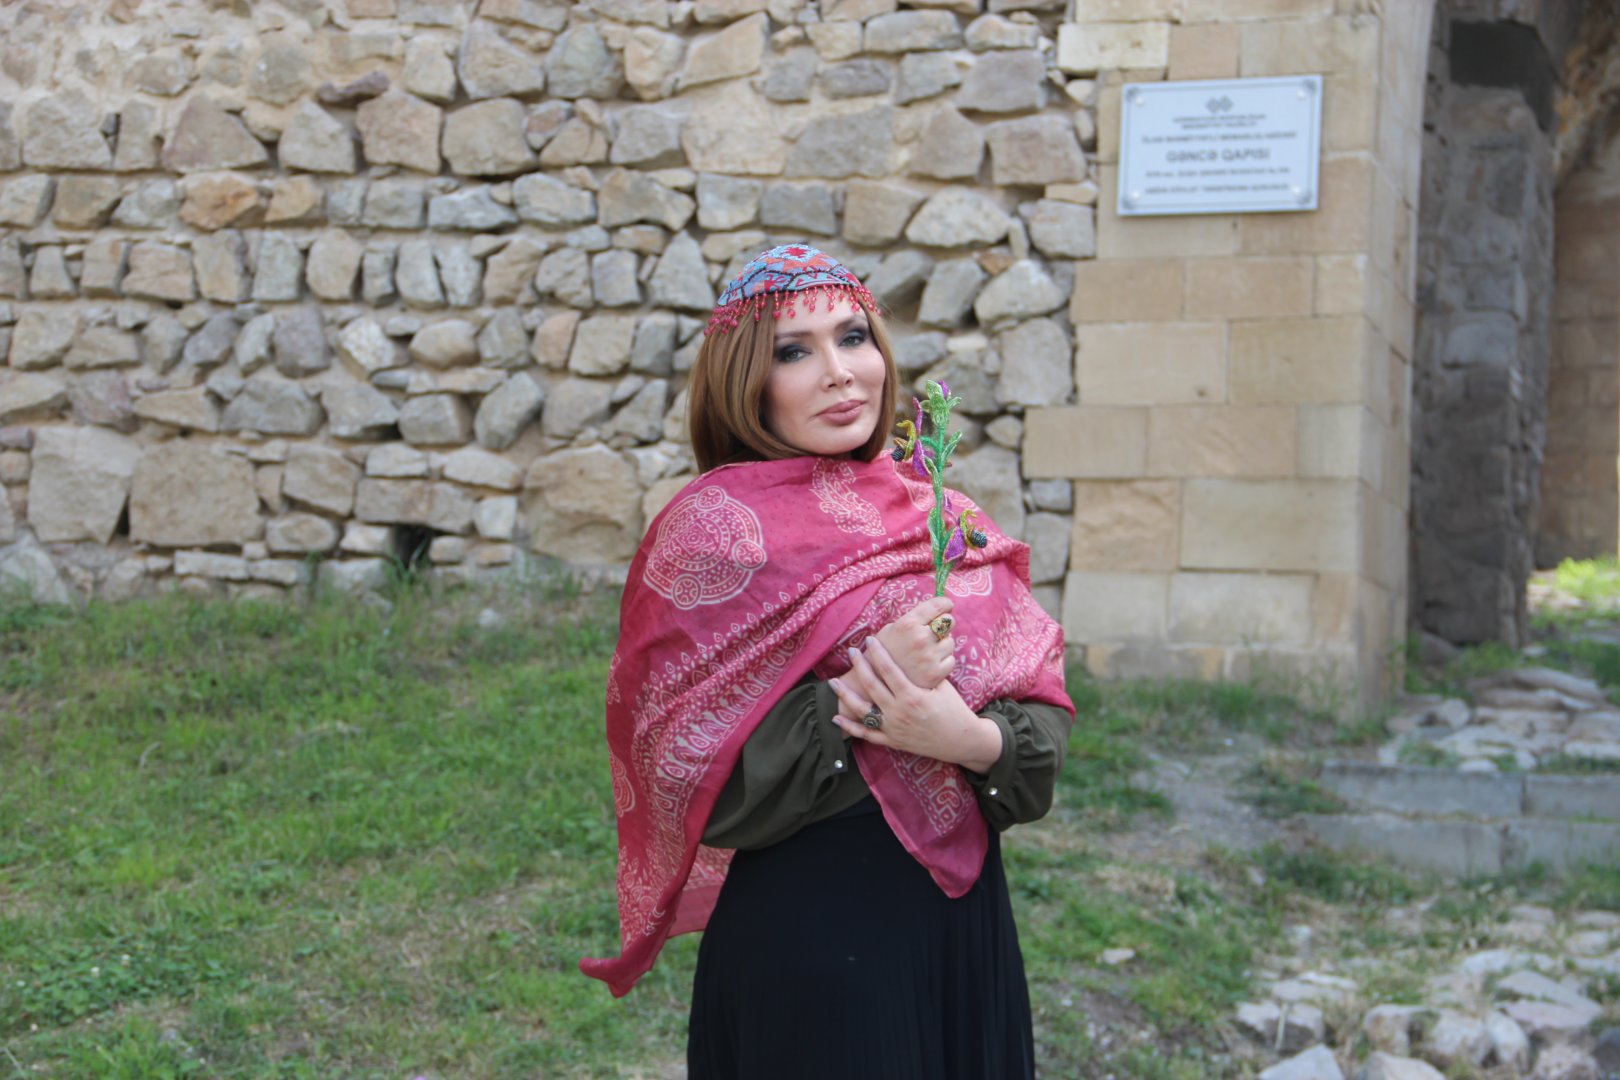 Объявлен международный конкурс азербайджанского искусства кялагаи - председатель жюри Фахрия Халафова